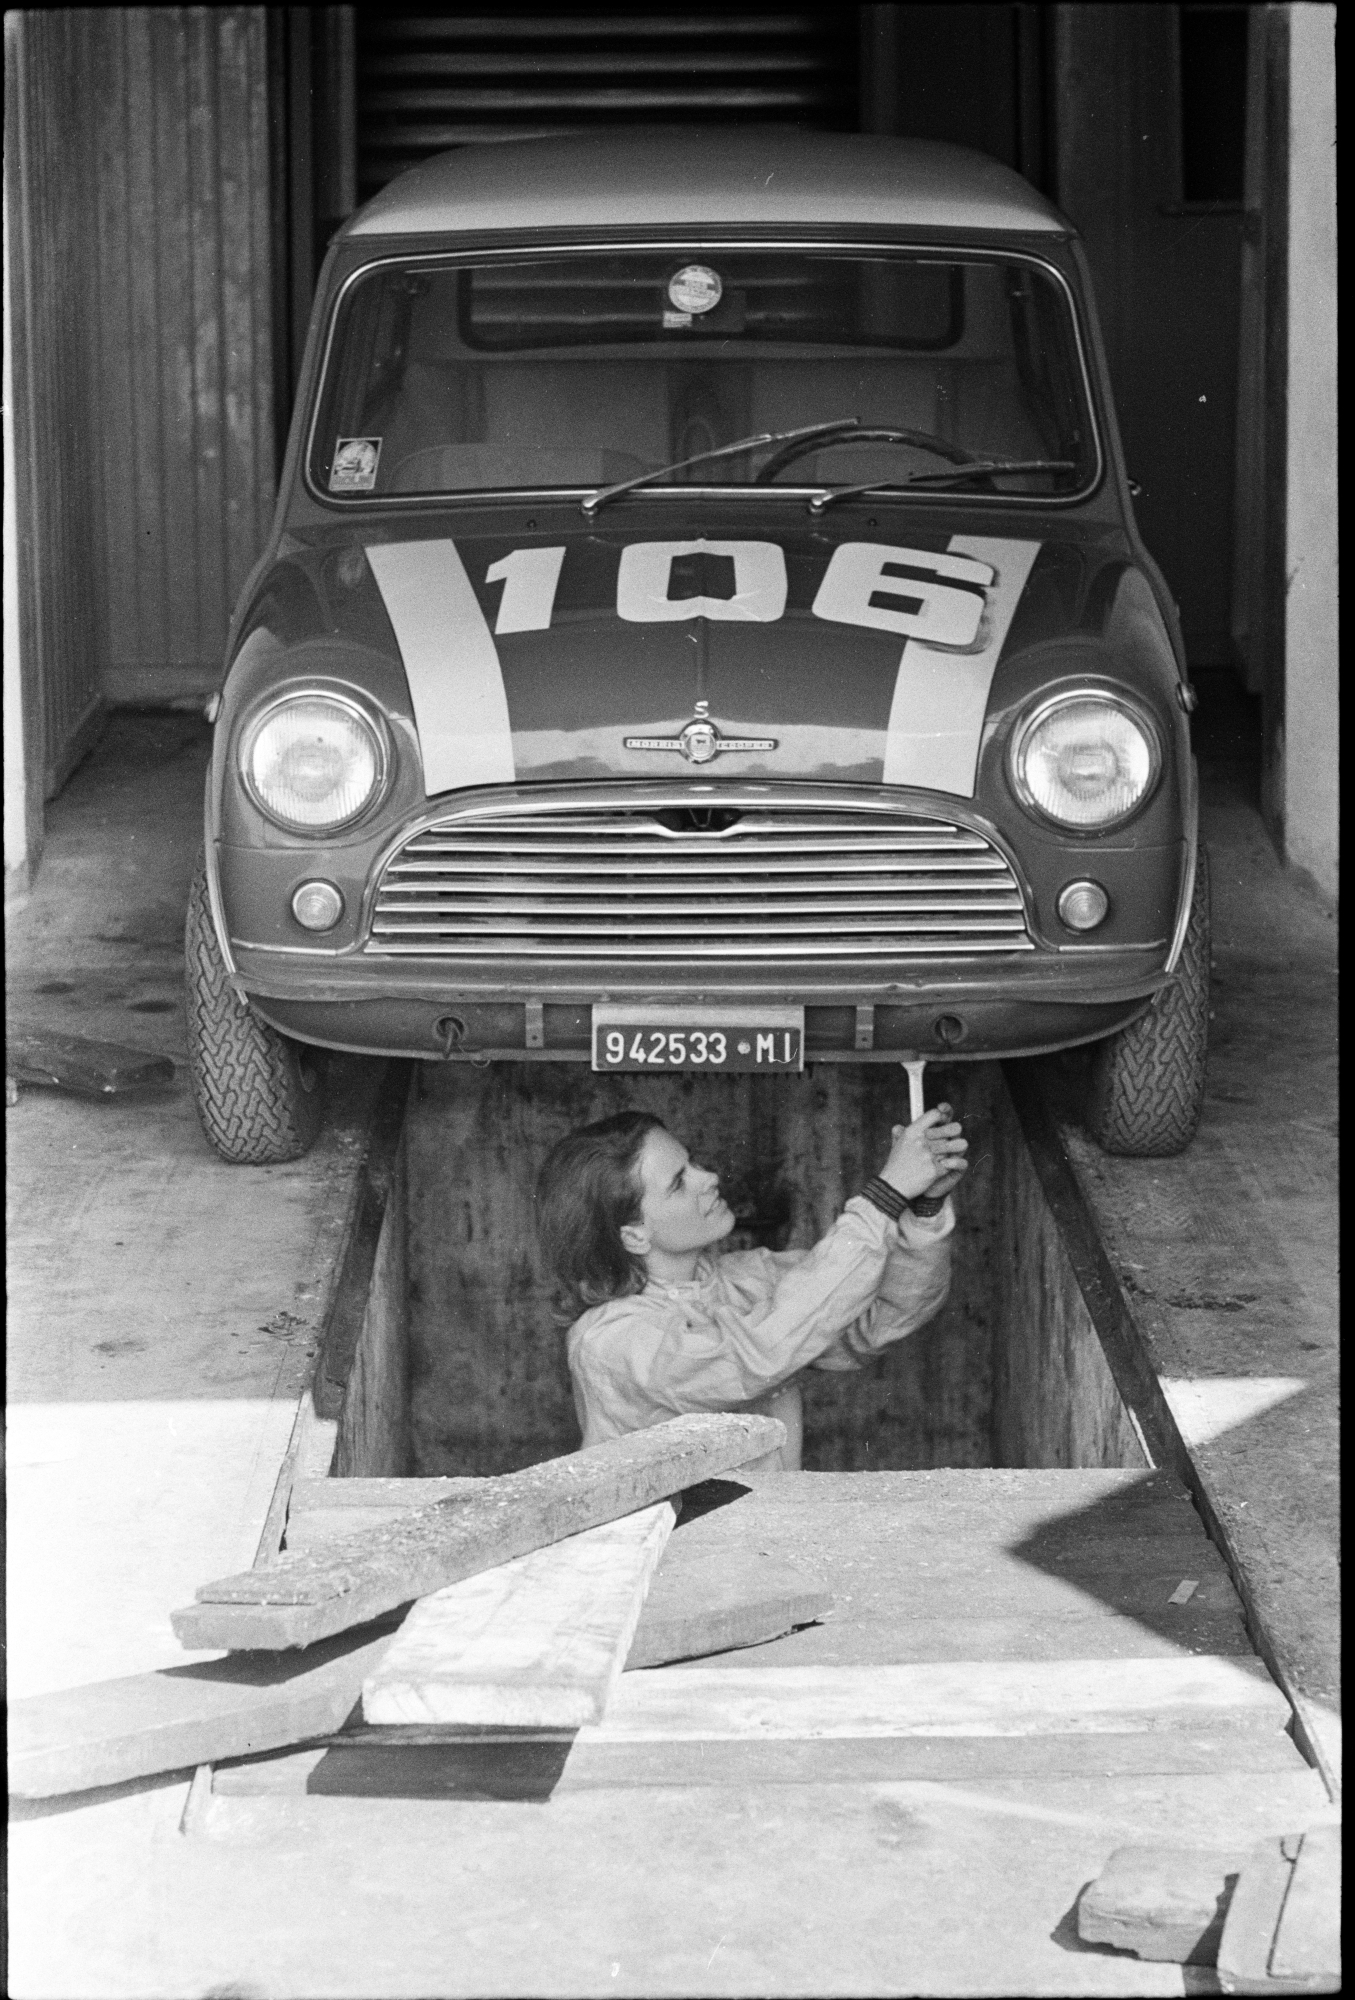 Donatella Odoardo meccanico a Monza, marzo 1965 Fotografia di Marco Emili – Publifoto Negativo su pellicola, 35 mm Archivio Publifoto Intesa Sanpaolo